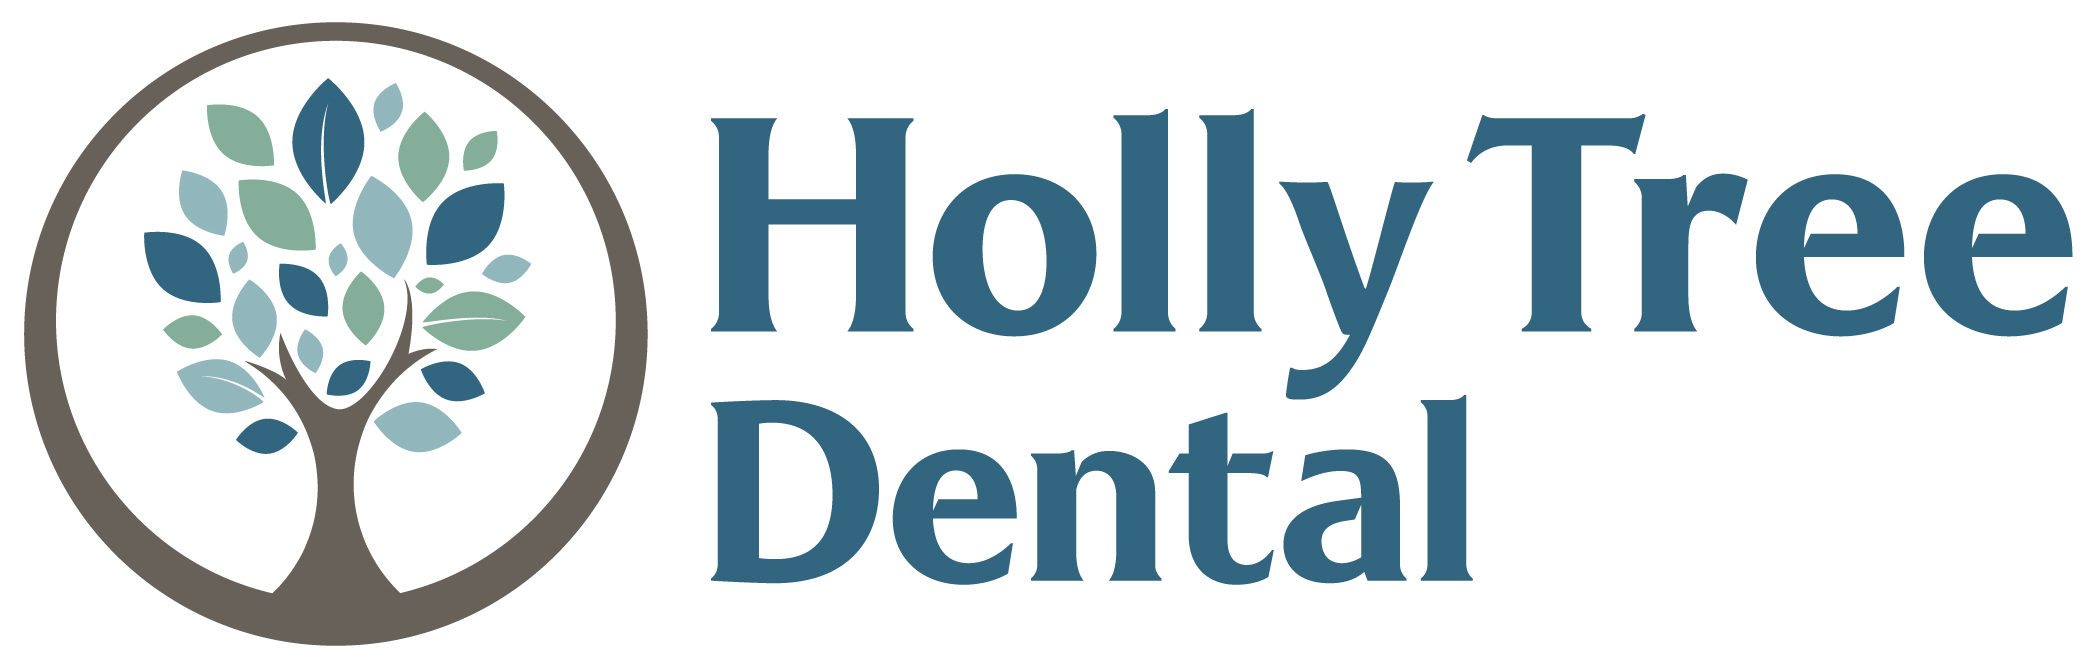 Holly Tree Dental